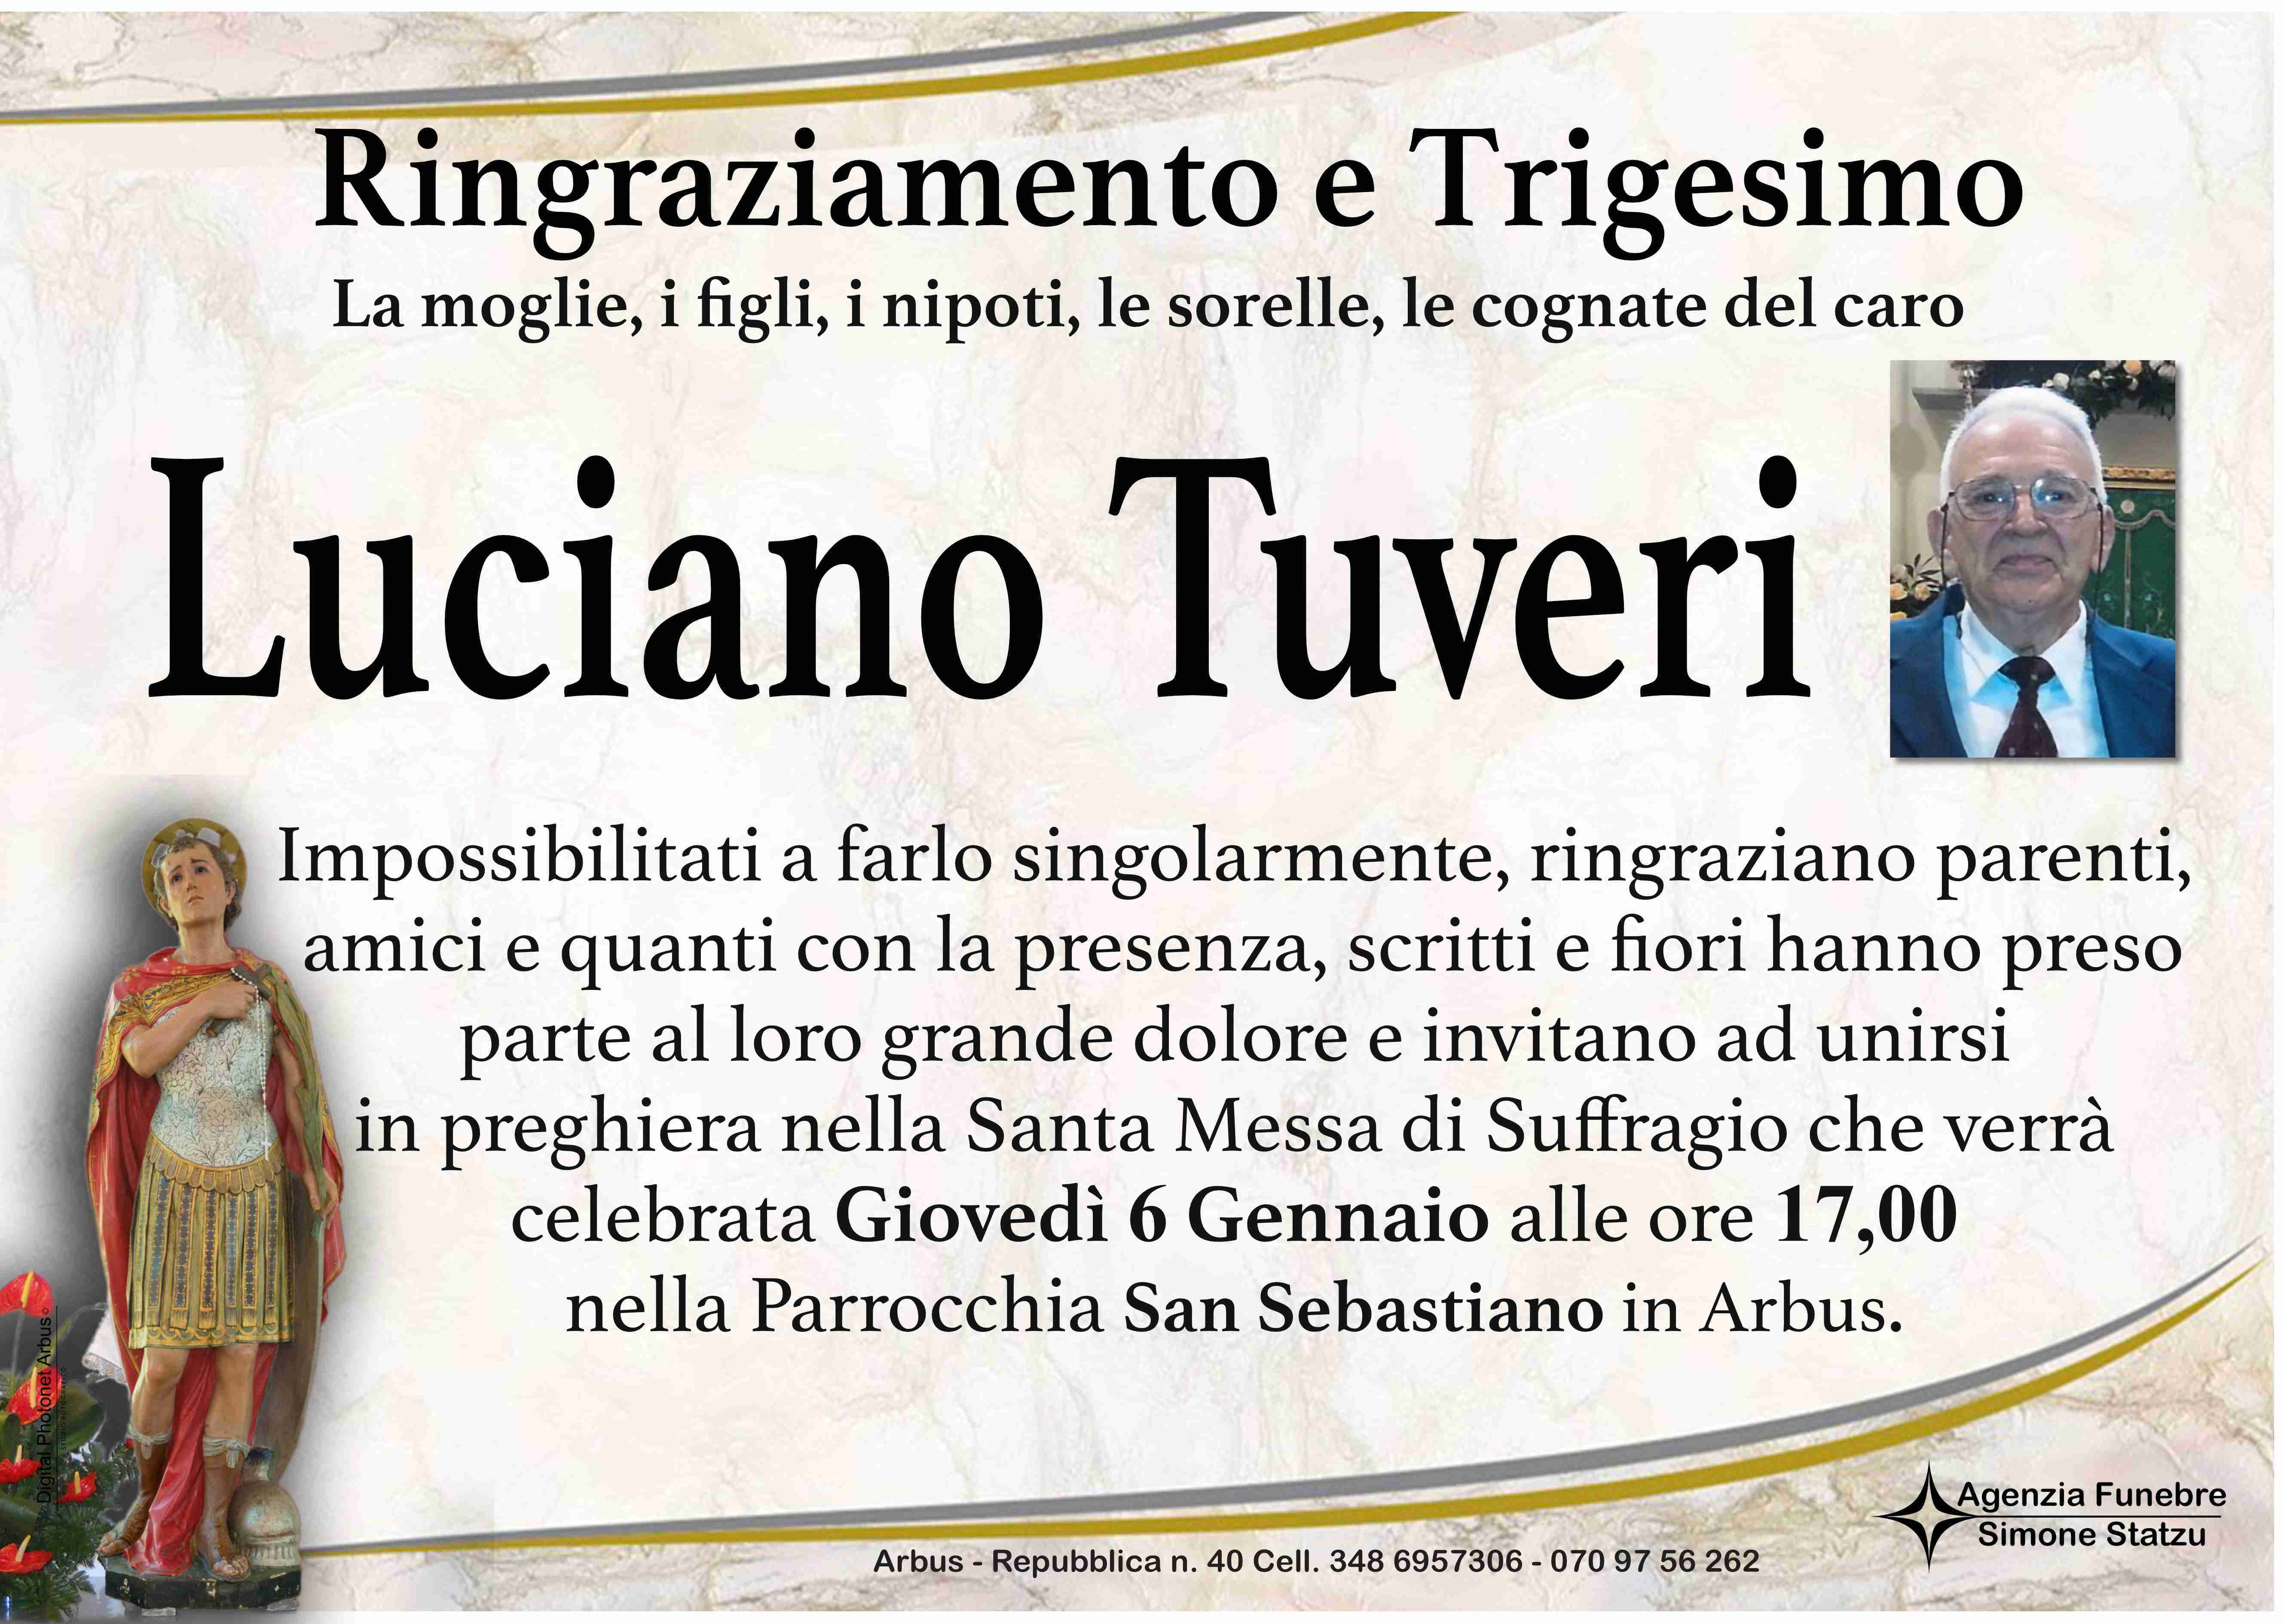 Luciano Tuveri